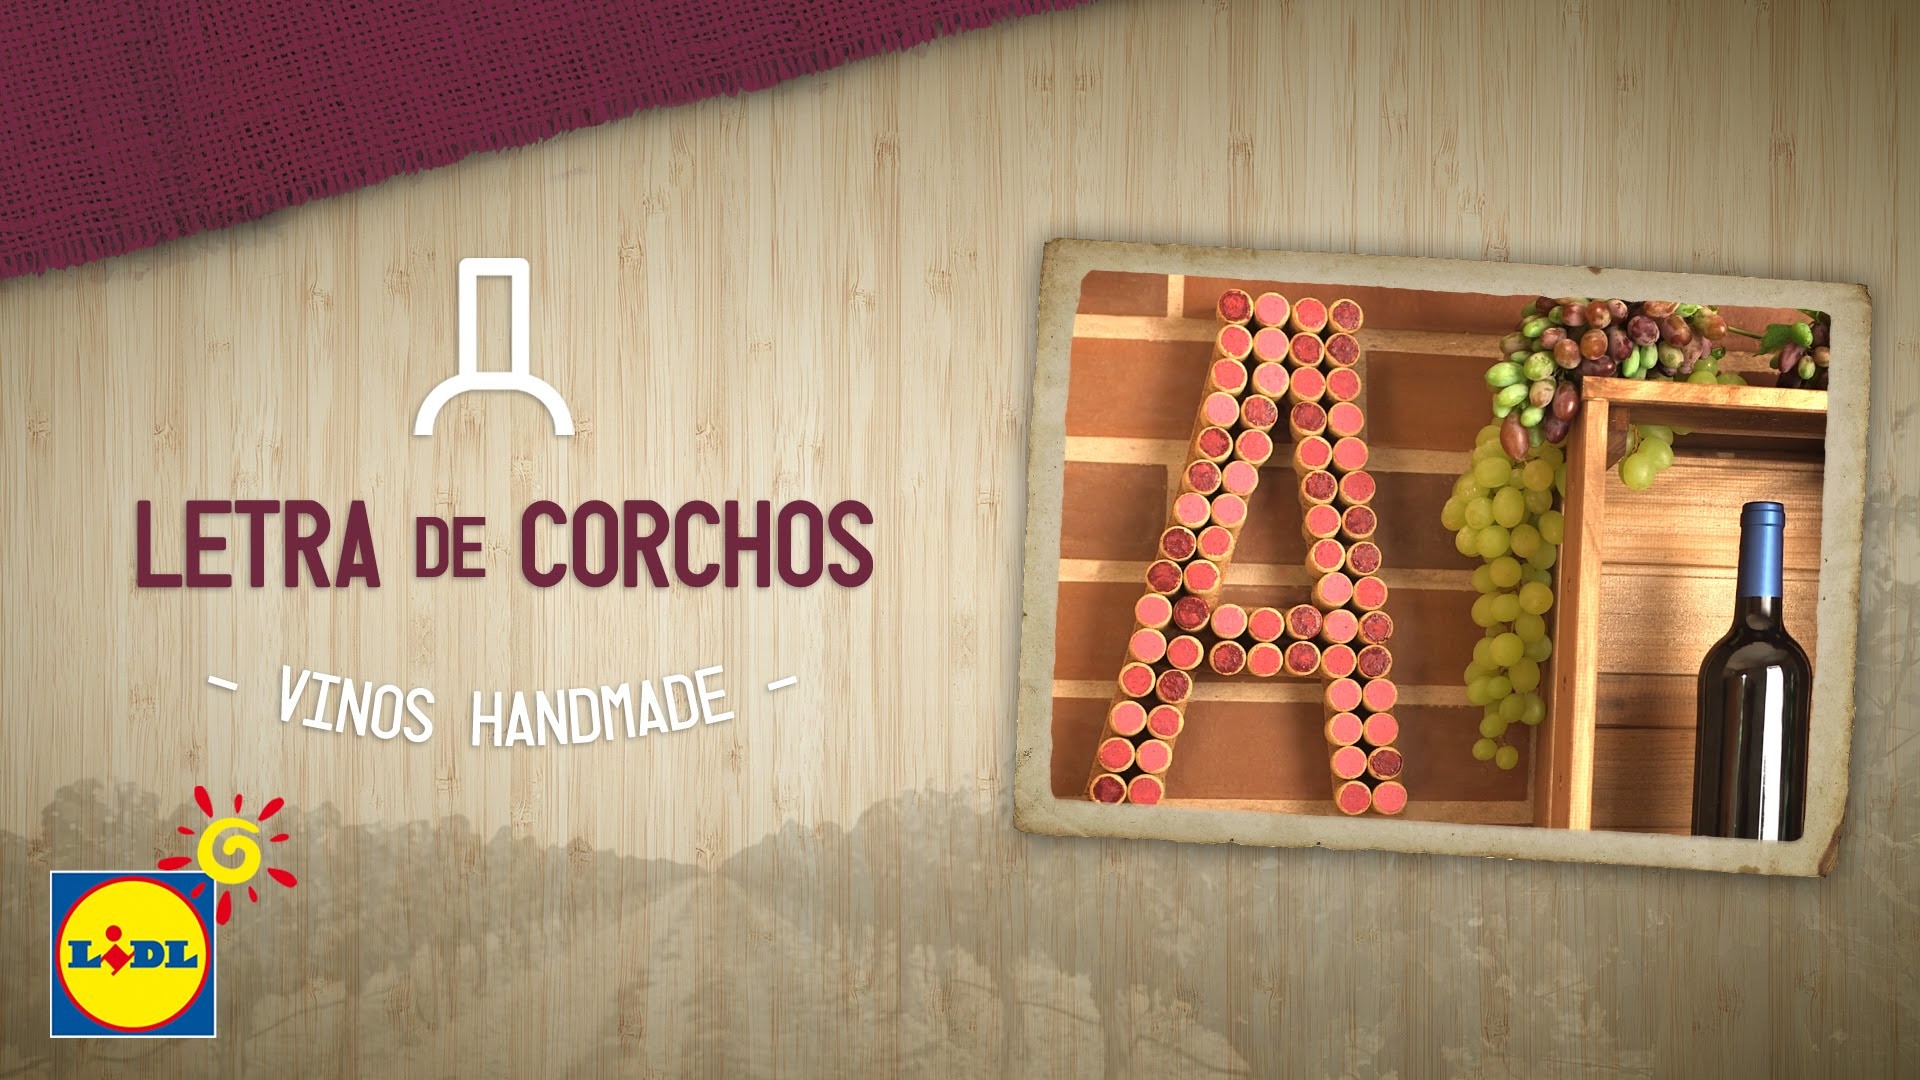 Letra Con Corchos - Handmade Vinos